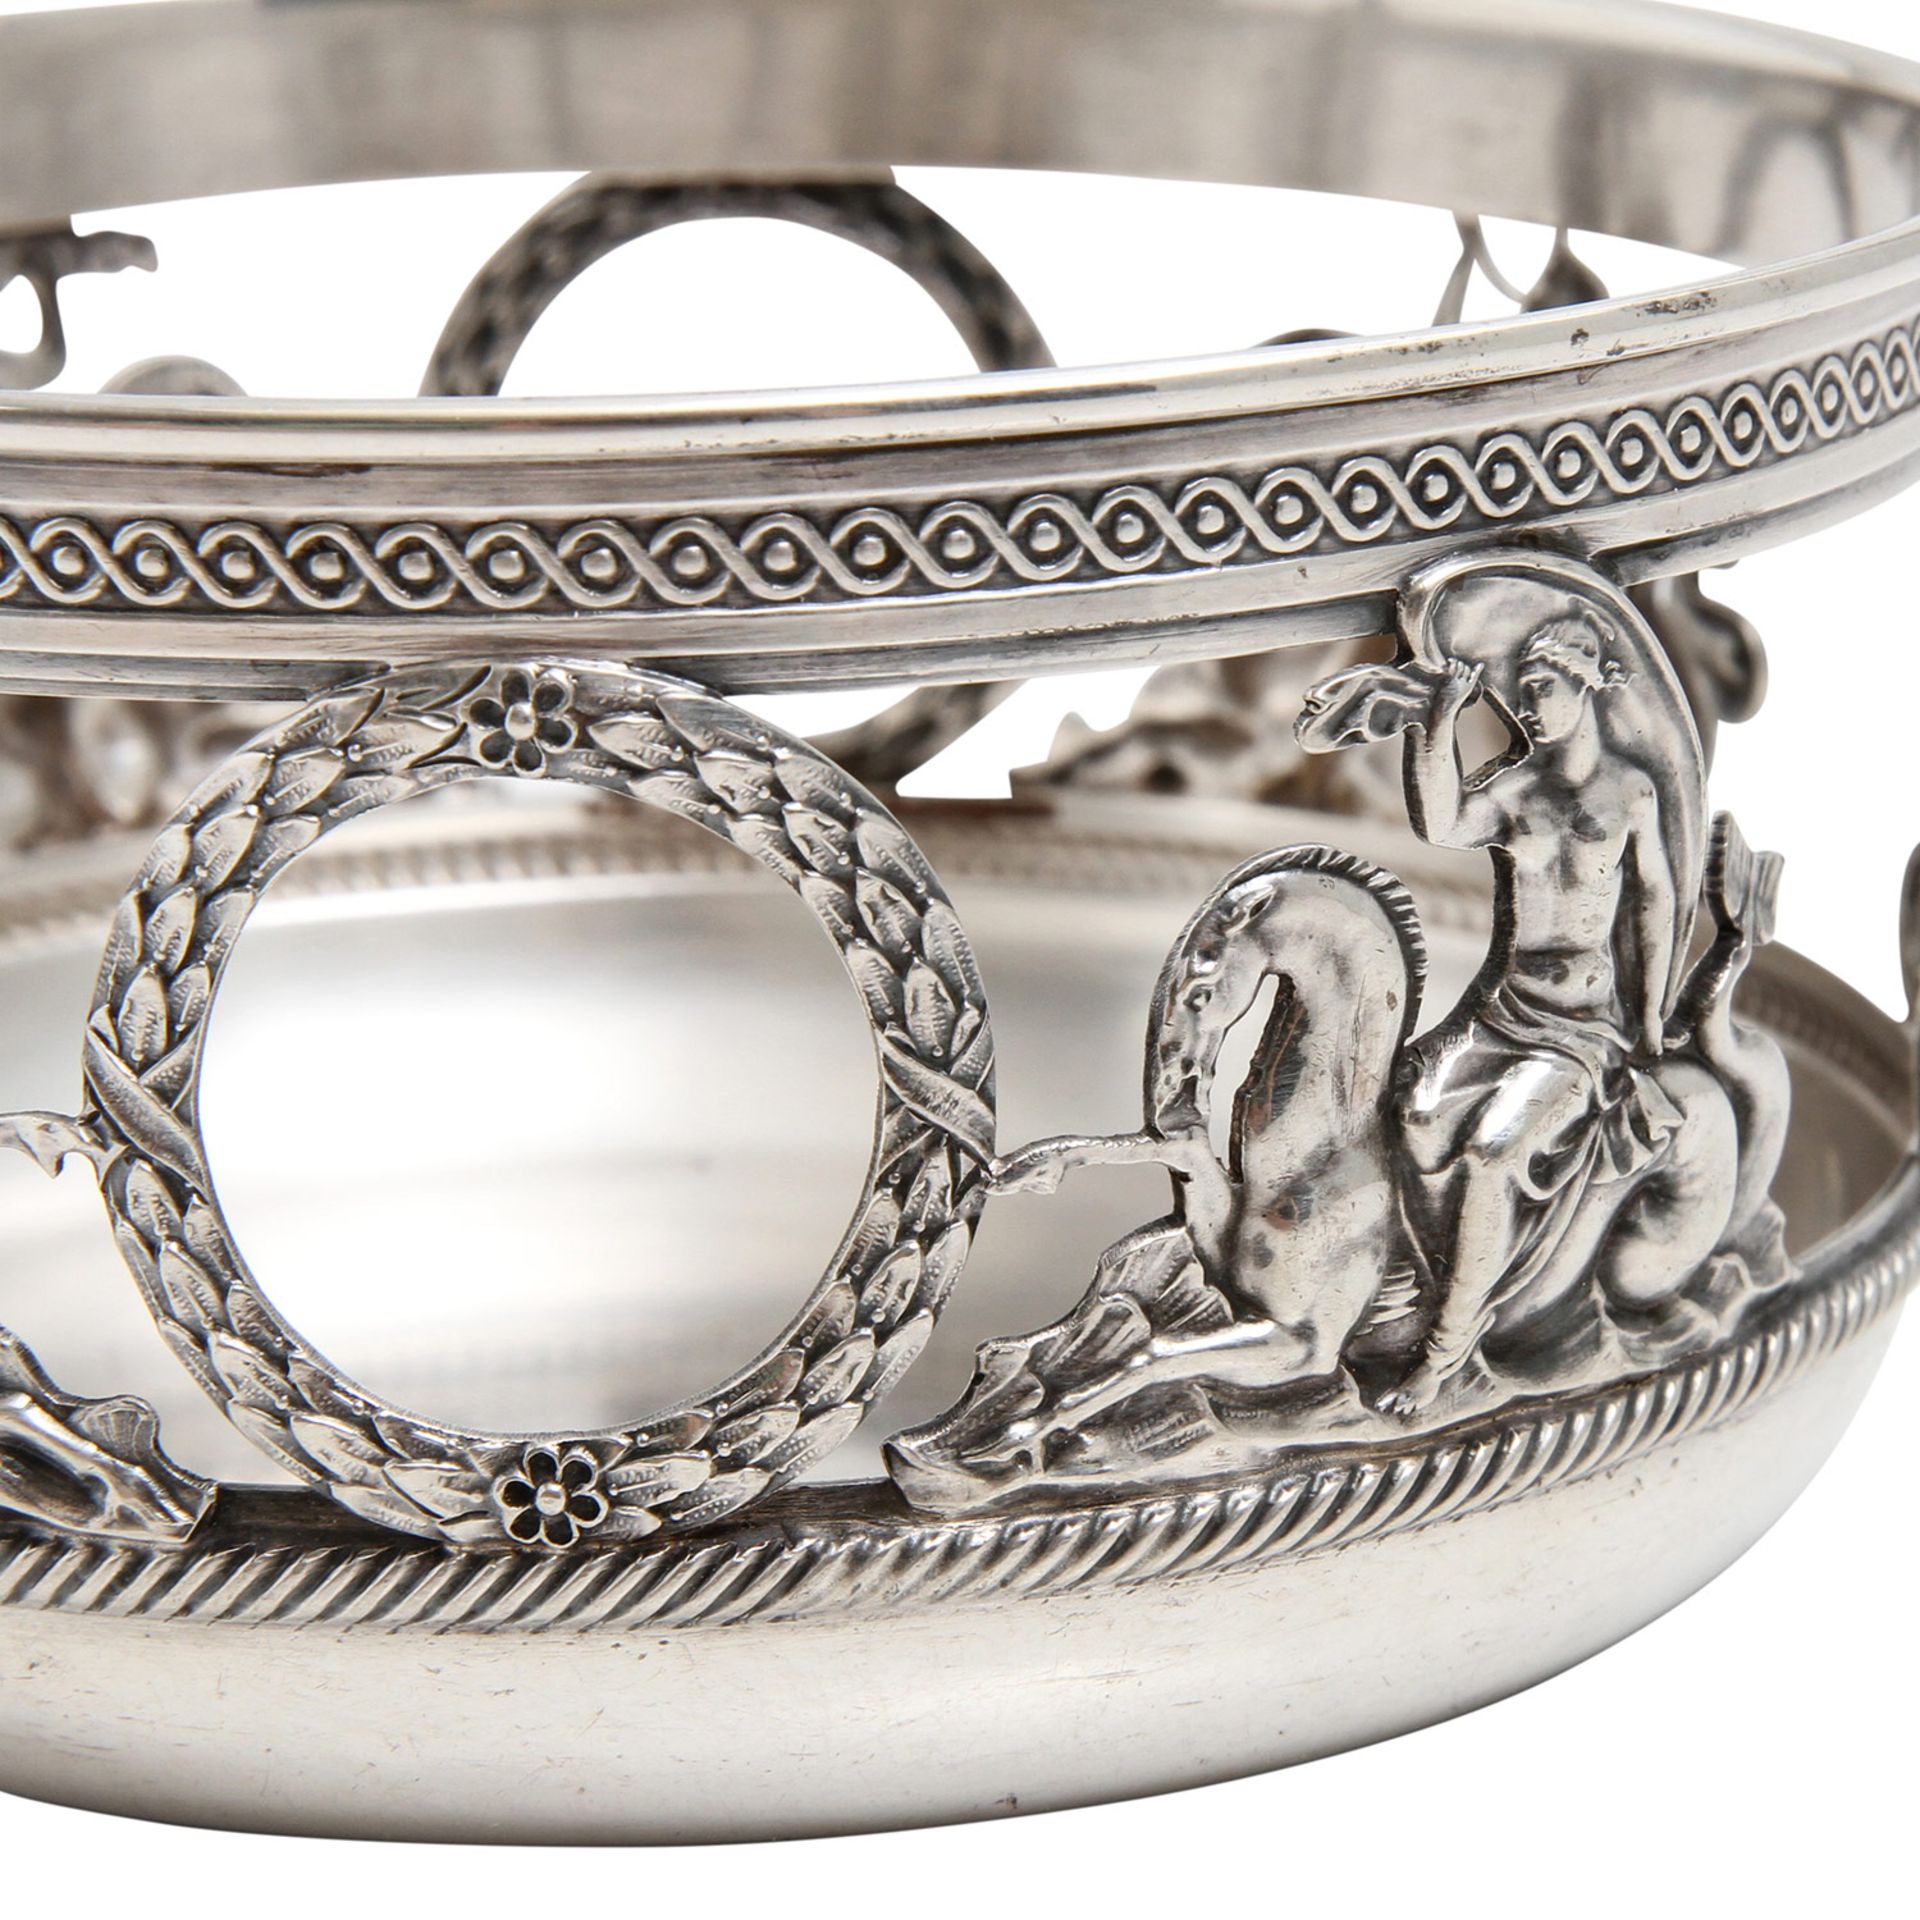 BRUCKMANN Henkelkörbchen 800 Silber, Ende 19. Jhd. Runde Form, durchbrochen gearbeitete Wandung - Bild 4 aus 6